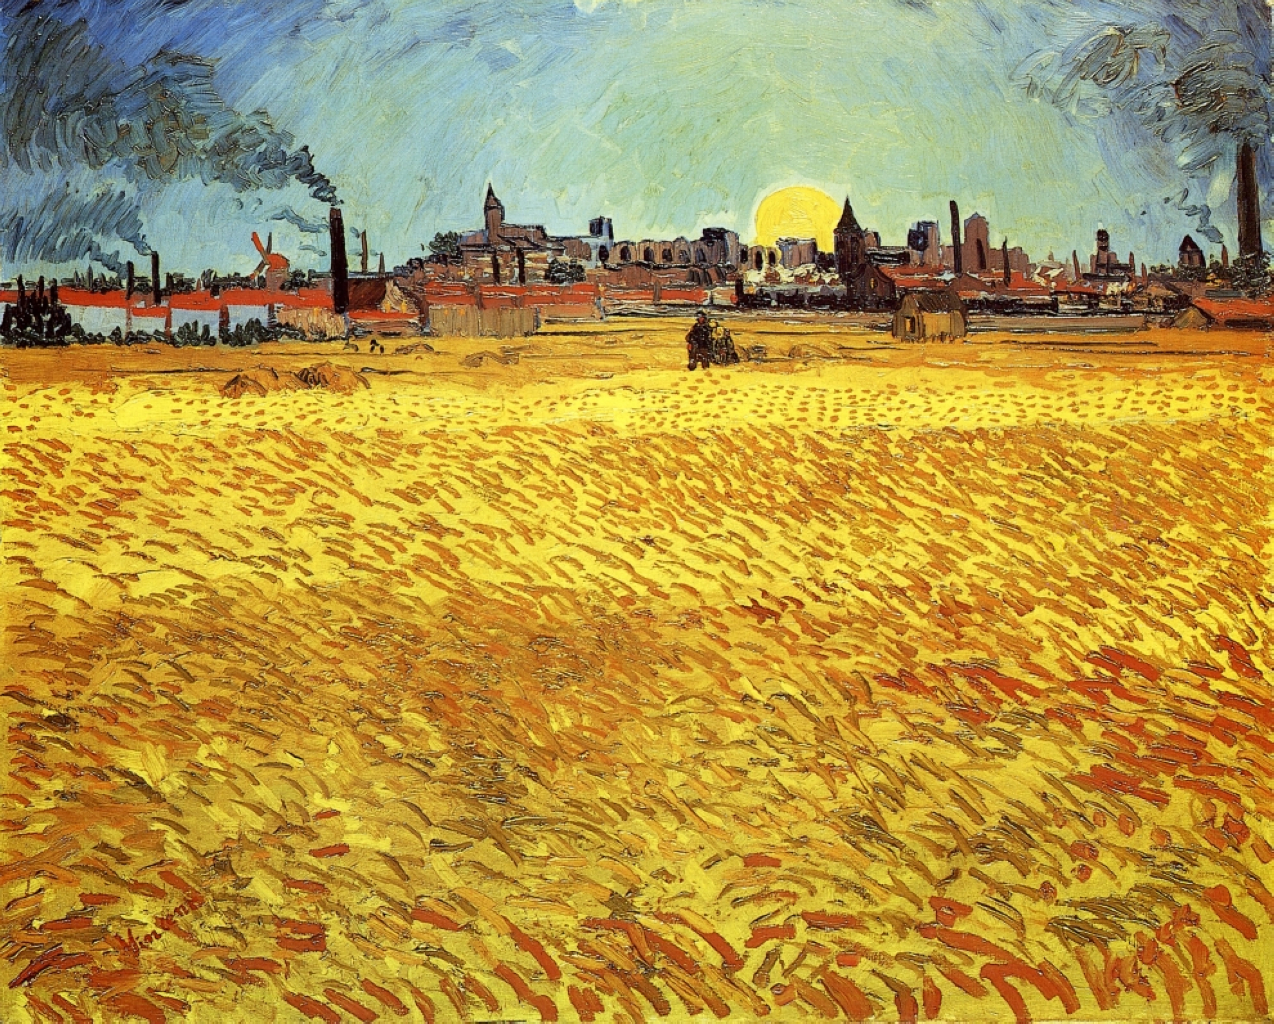 Sommerabend, Weizenfeld mit untergehender Sonne by Vincent van Gogh - 1888 - 188 x 231 cm Kunst Museum Winterthur